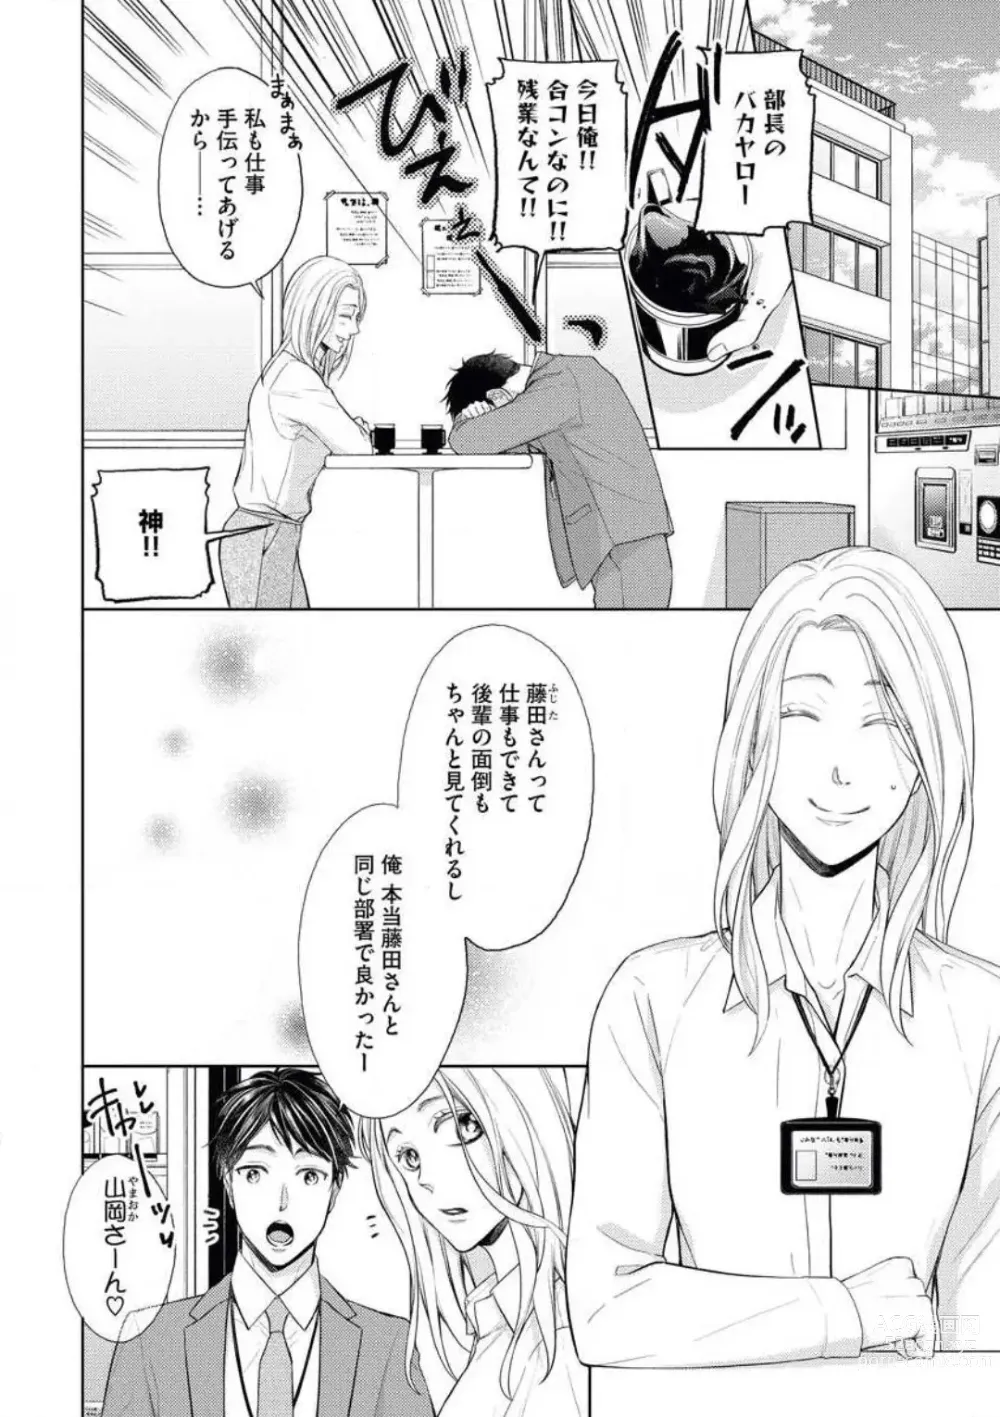 Page 2 of manga Mitsu Koi Maisonette